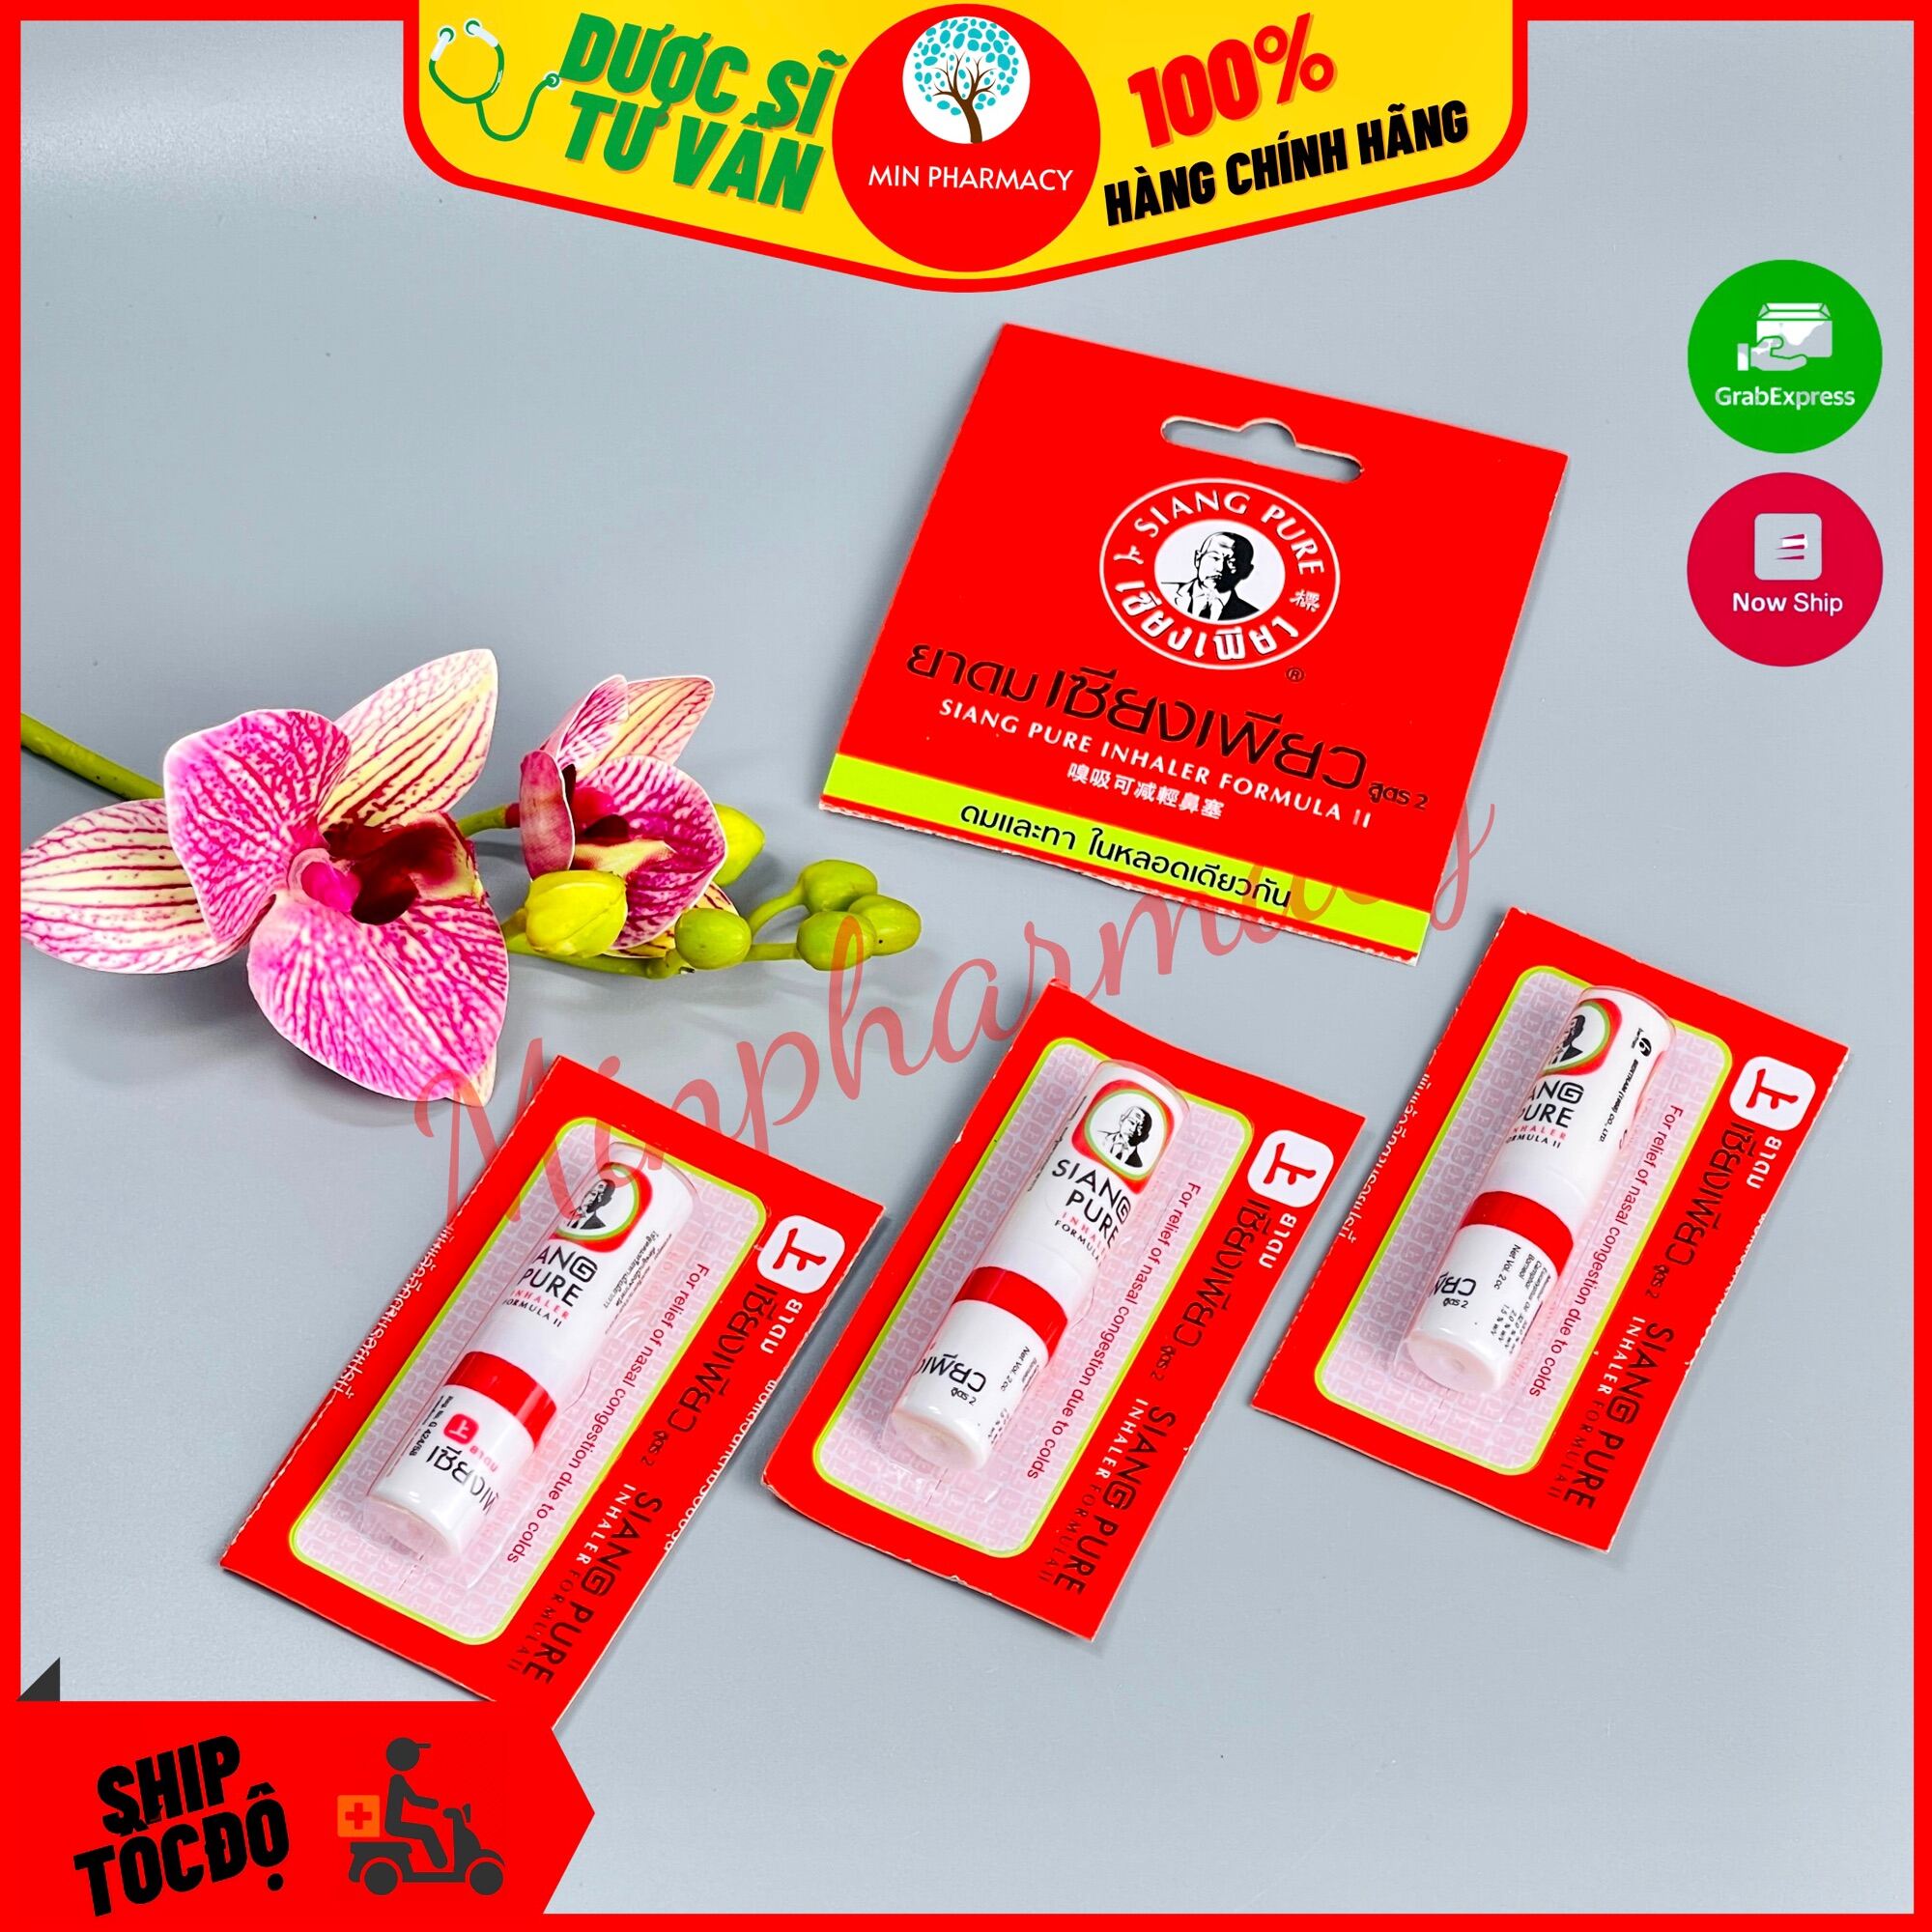 Ống hít thông mũi Thái Lan màu đỏ SIANG PURE chính hãng - Minpharmacy